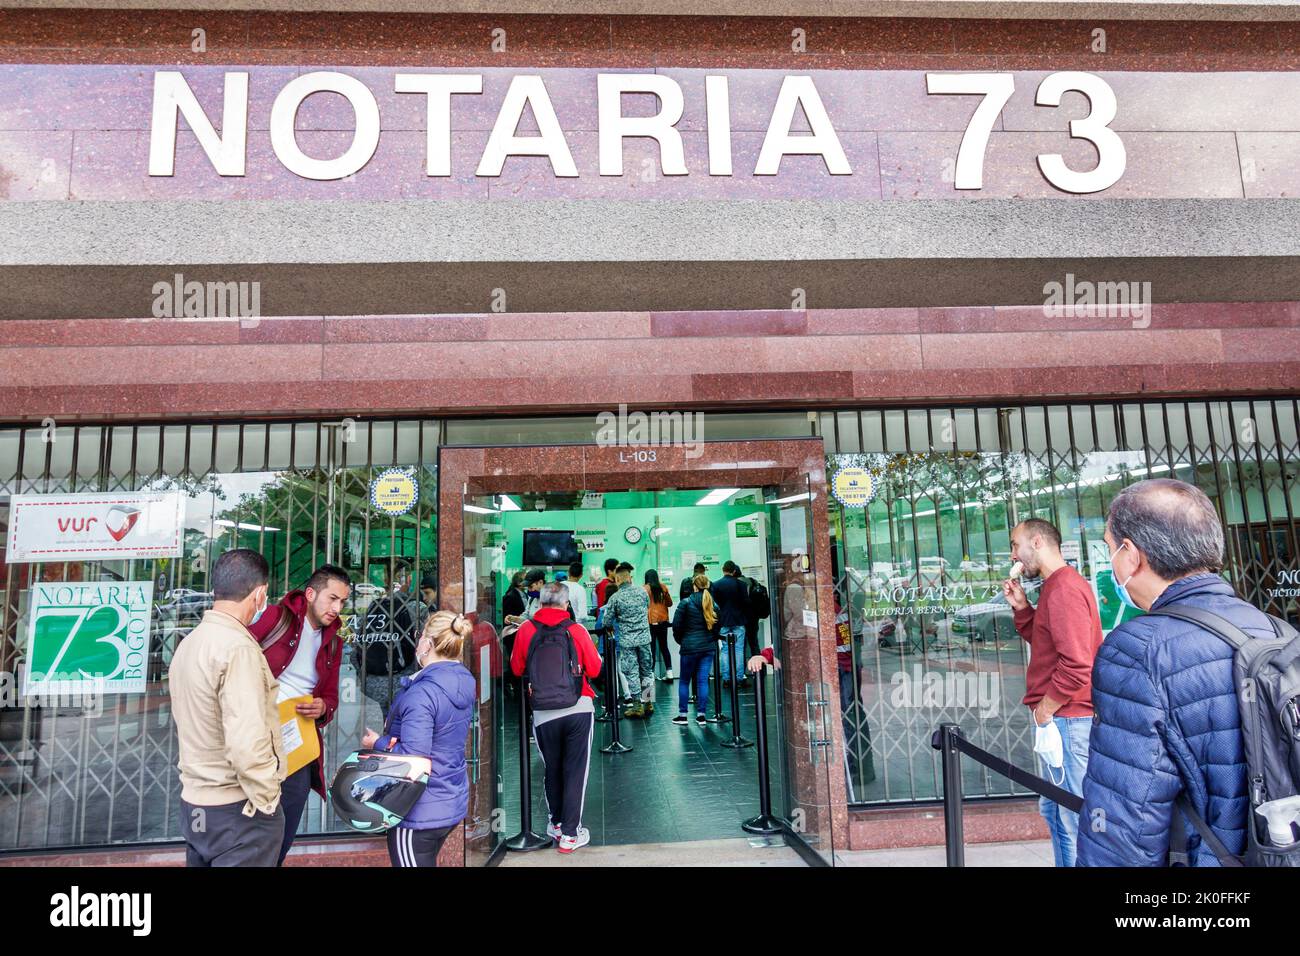 Bogota Colombia, Avenida El Dorado Calle 26, Notaria 73 notaio ufficio pubblico esterno ingresso anteriore, uomo uomini maschio donna donne femmina, colombiana C Foto Stock